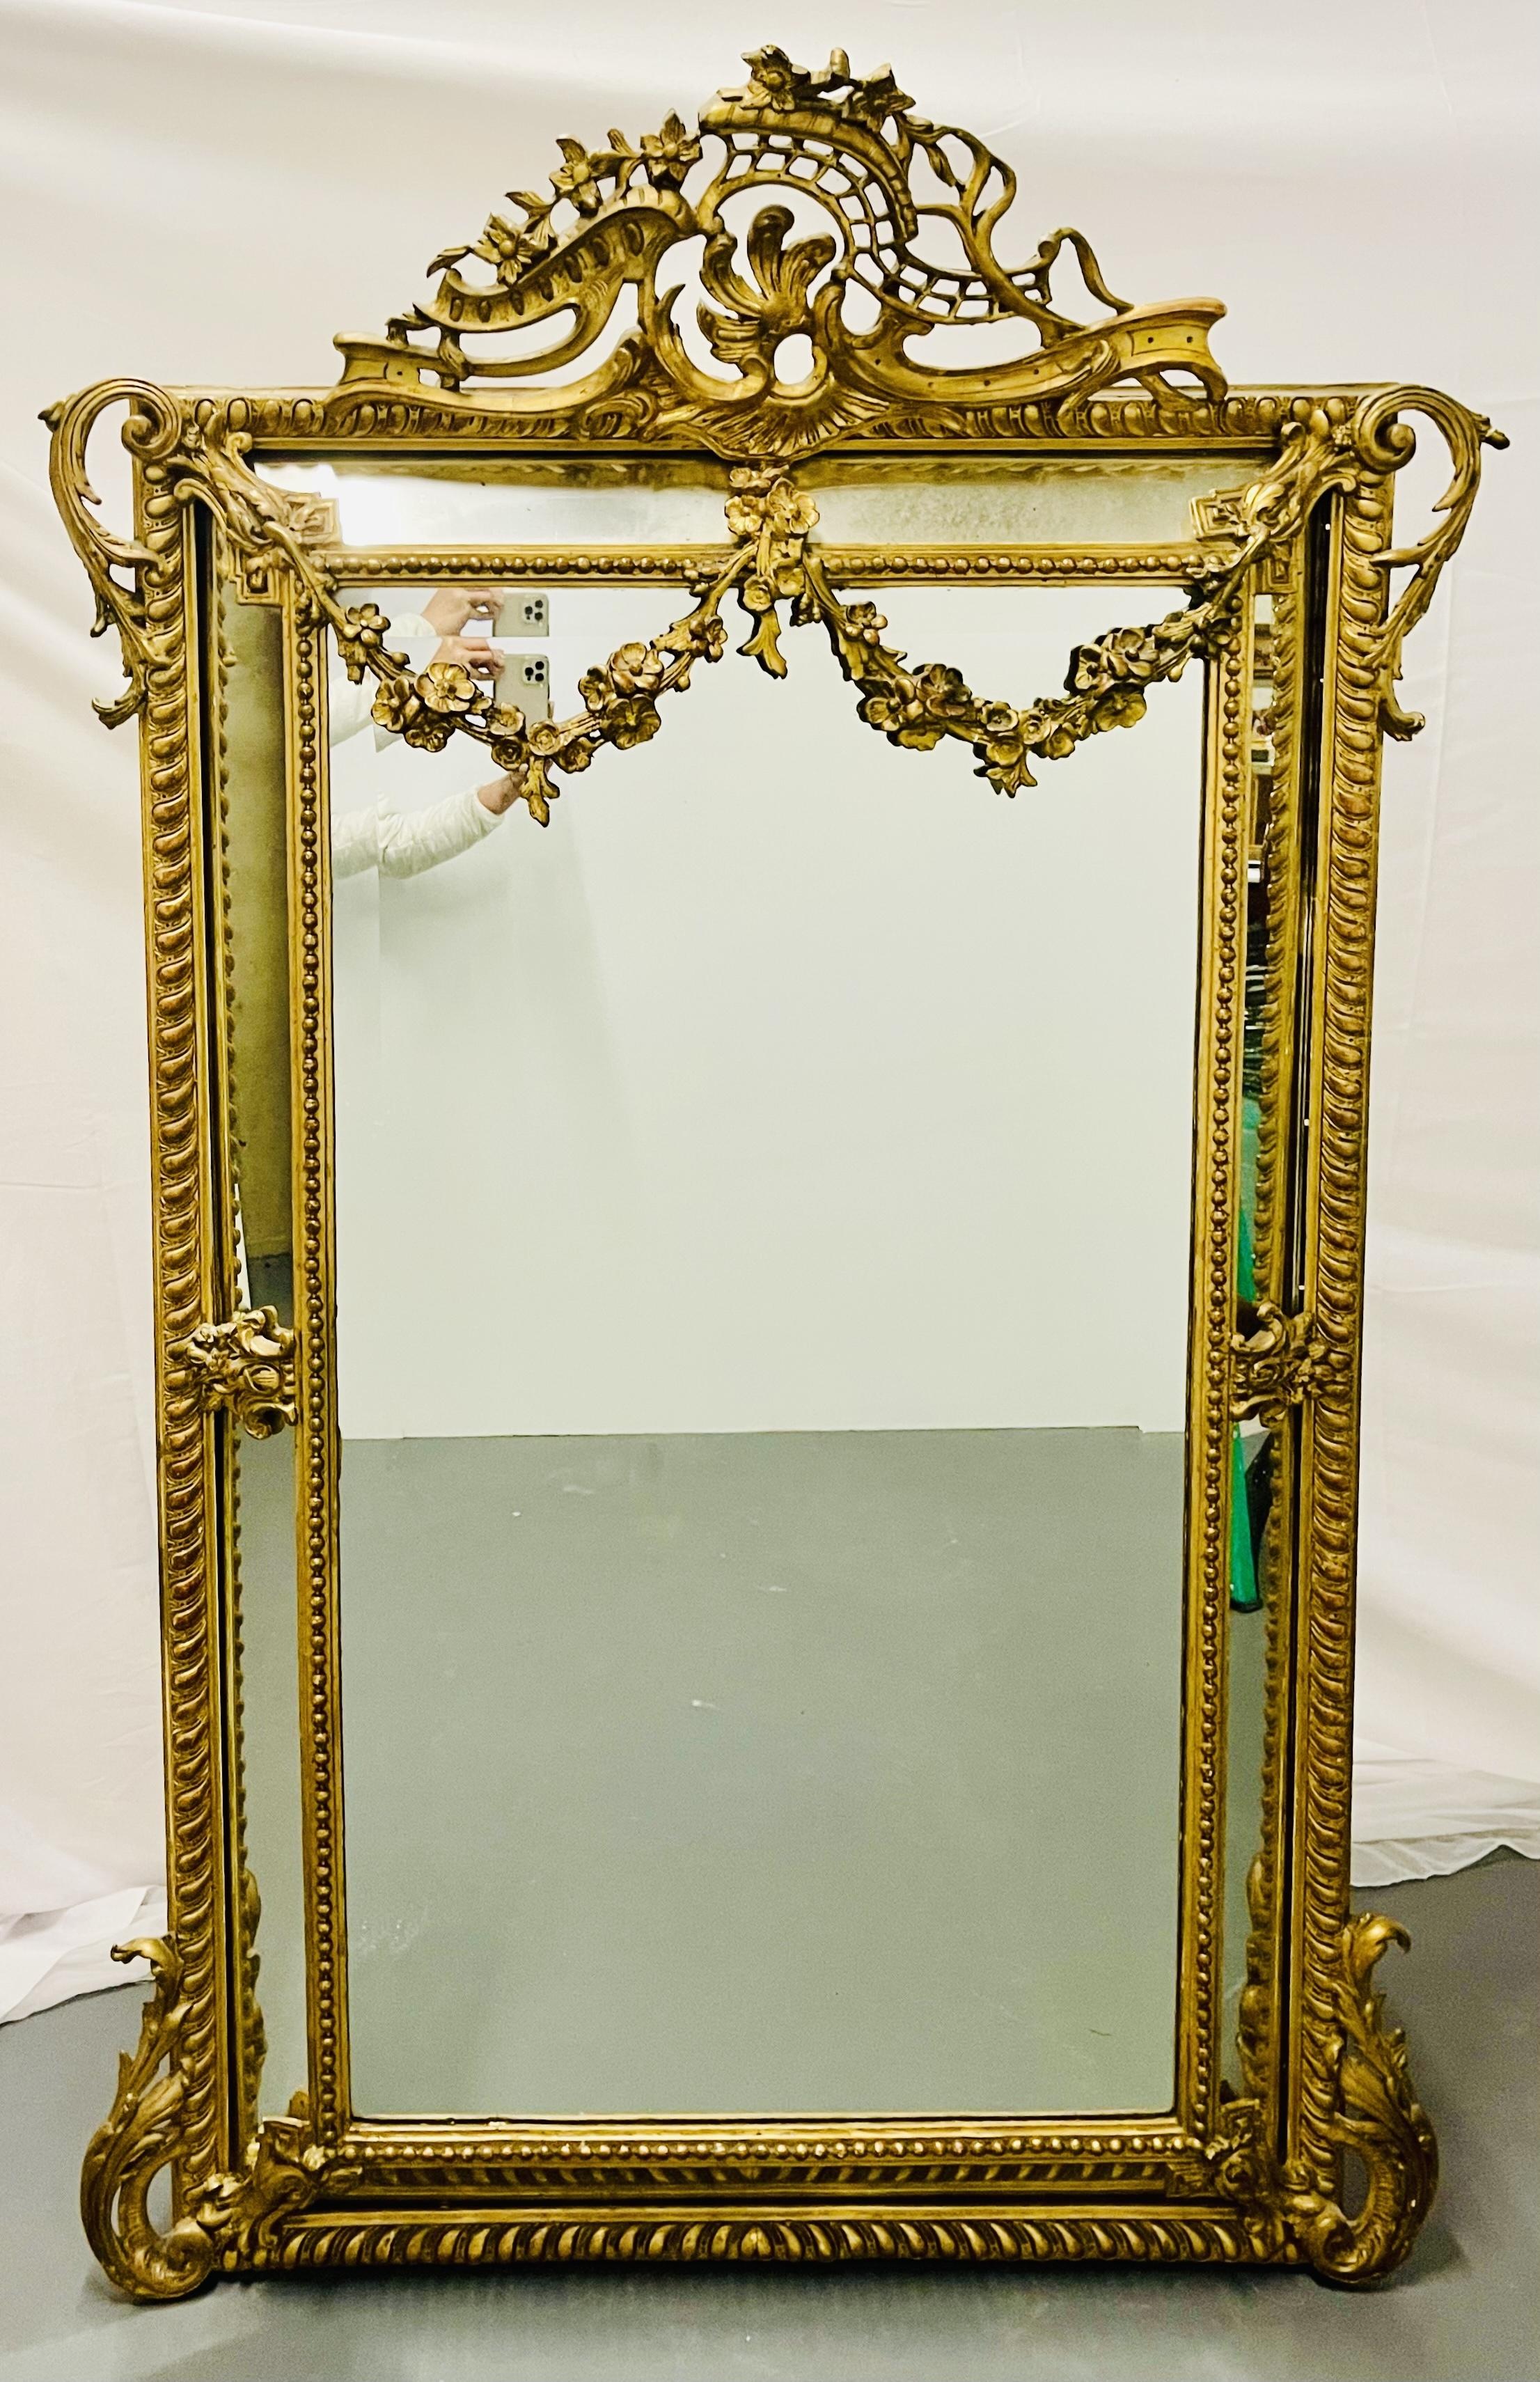 Miroir de style Louis XVI, 19e siècle, en console ou mural. Ce miroir à miroir inversé est tout simplement étonnant avec ses sculptures percées autour d'un double cadre en bois doré. Le panneau de miroir central épuré est flanqué de panneaux de